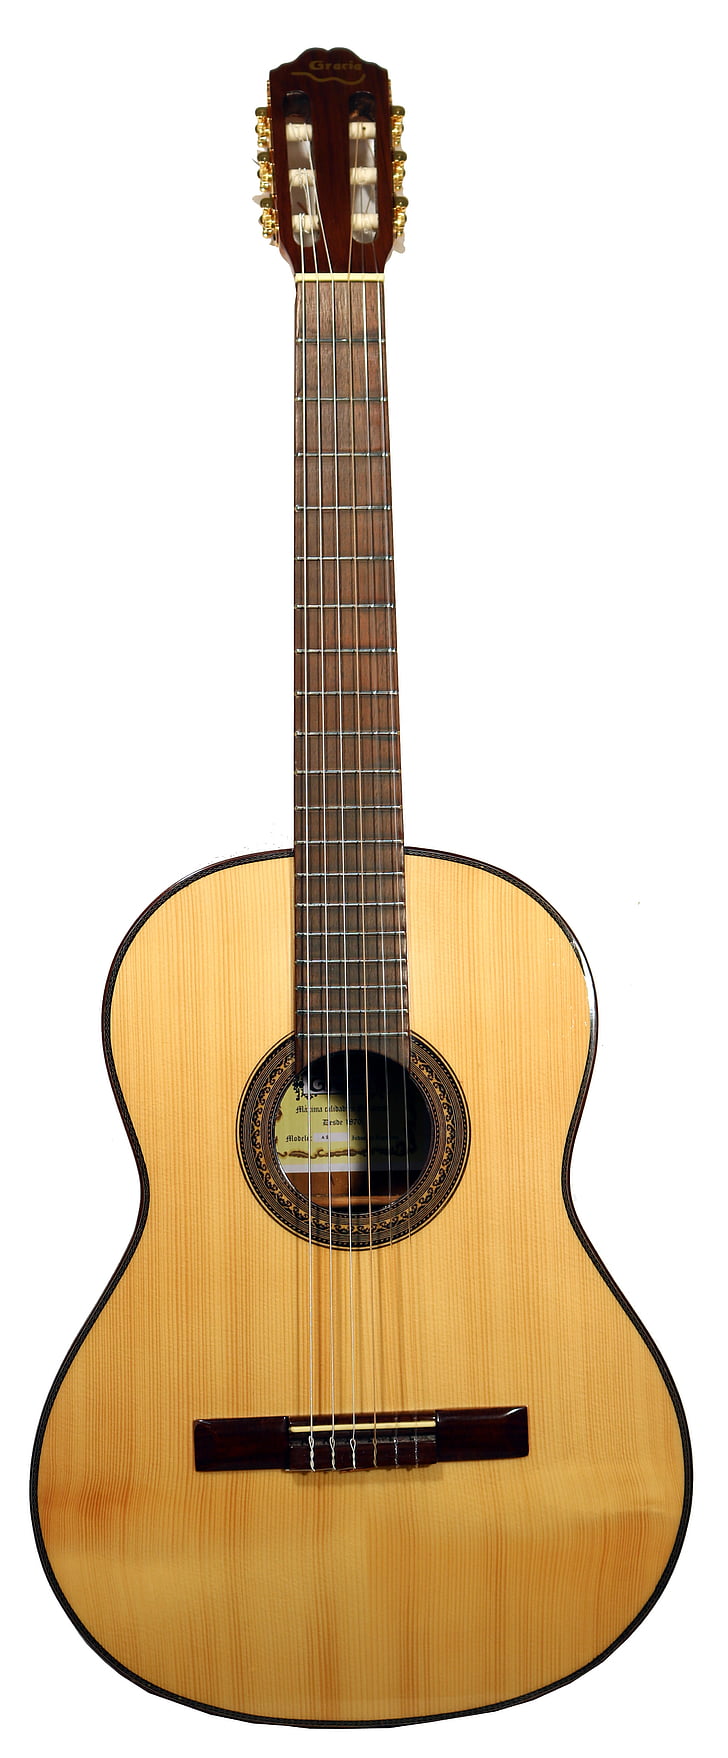 Guitarra, clásico, luthier, Español, Diapason, caja, madera